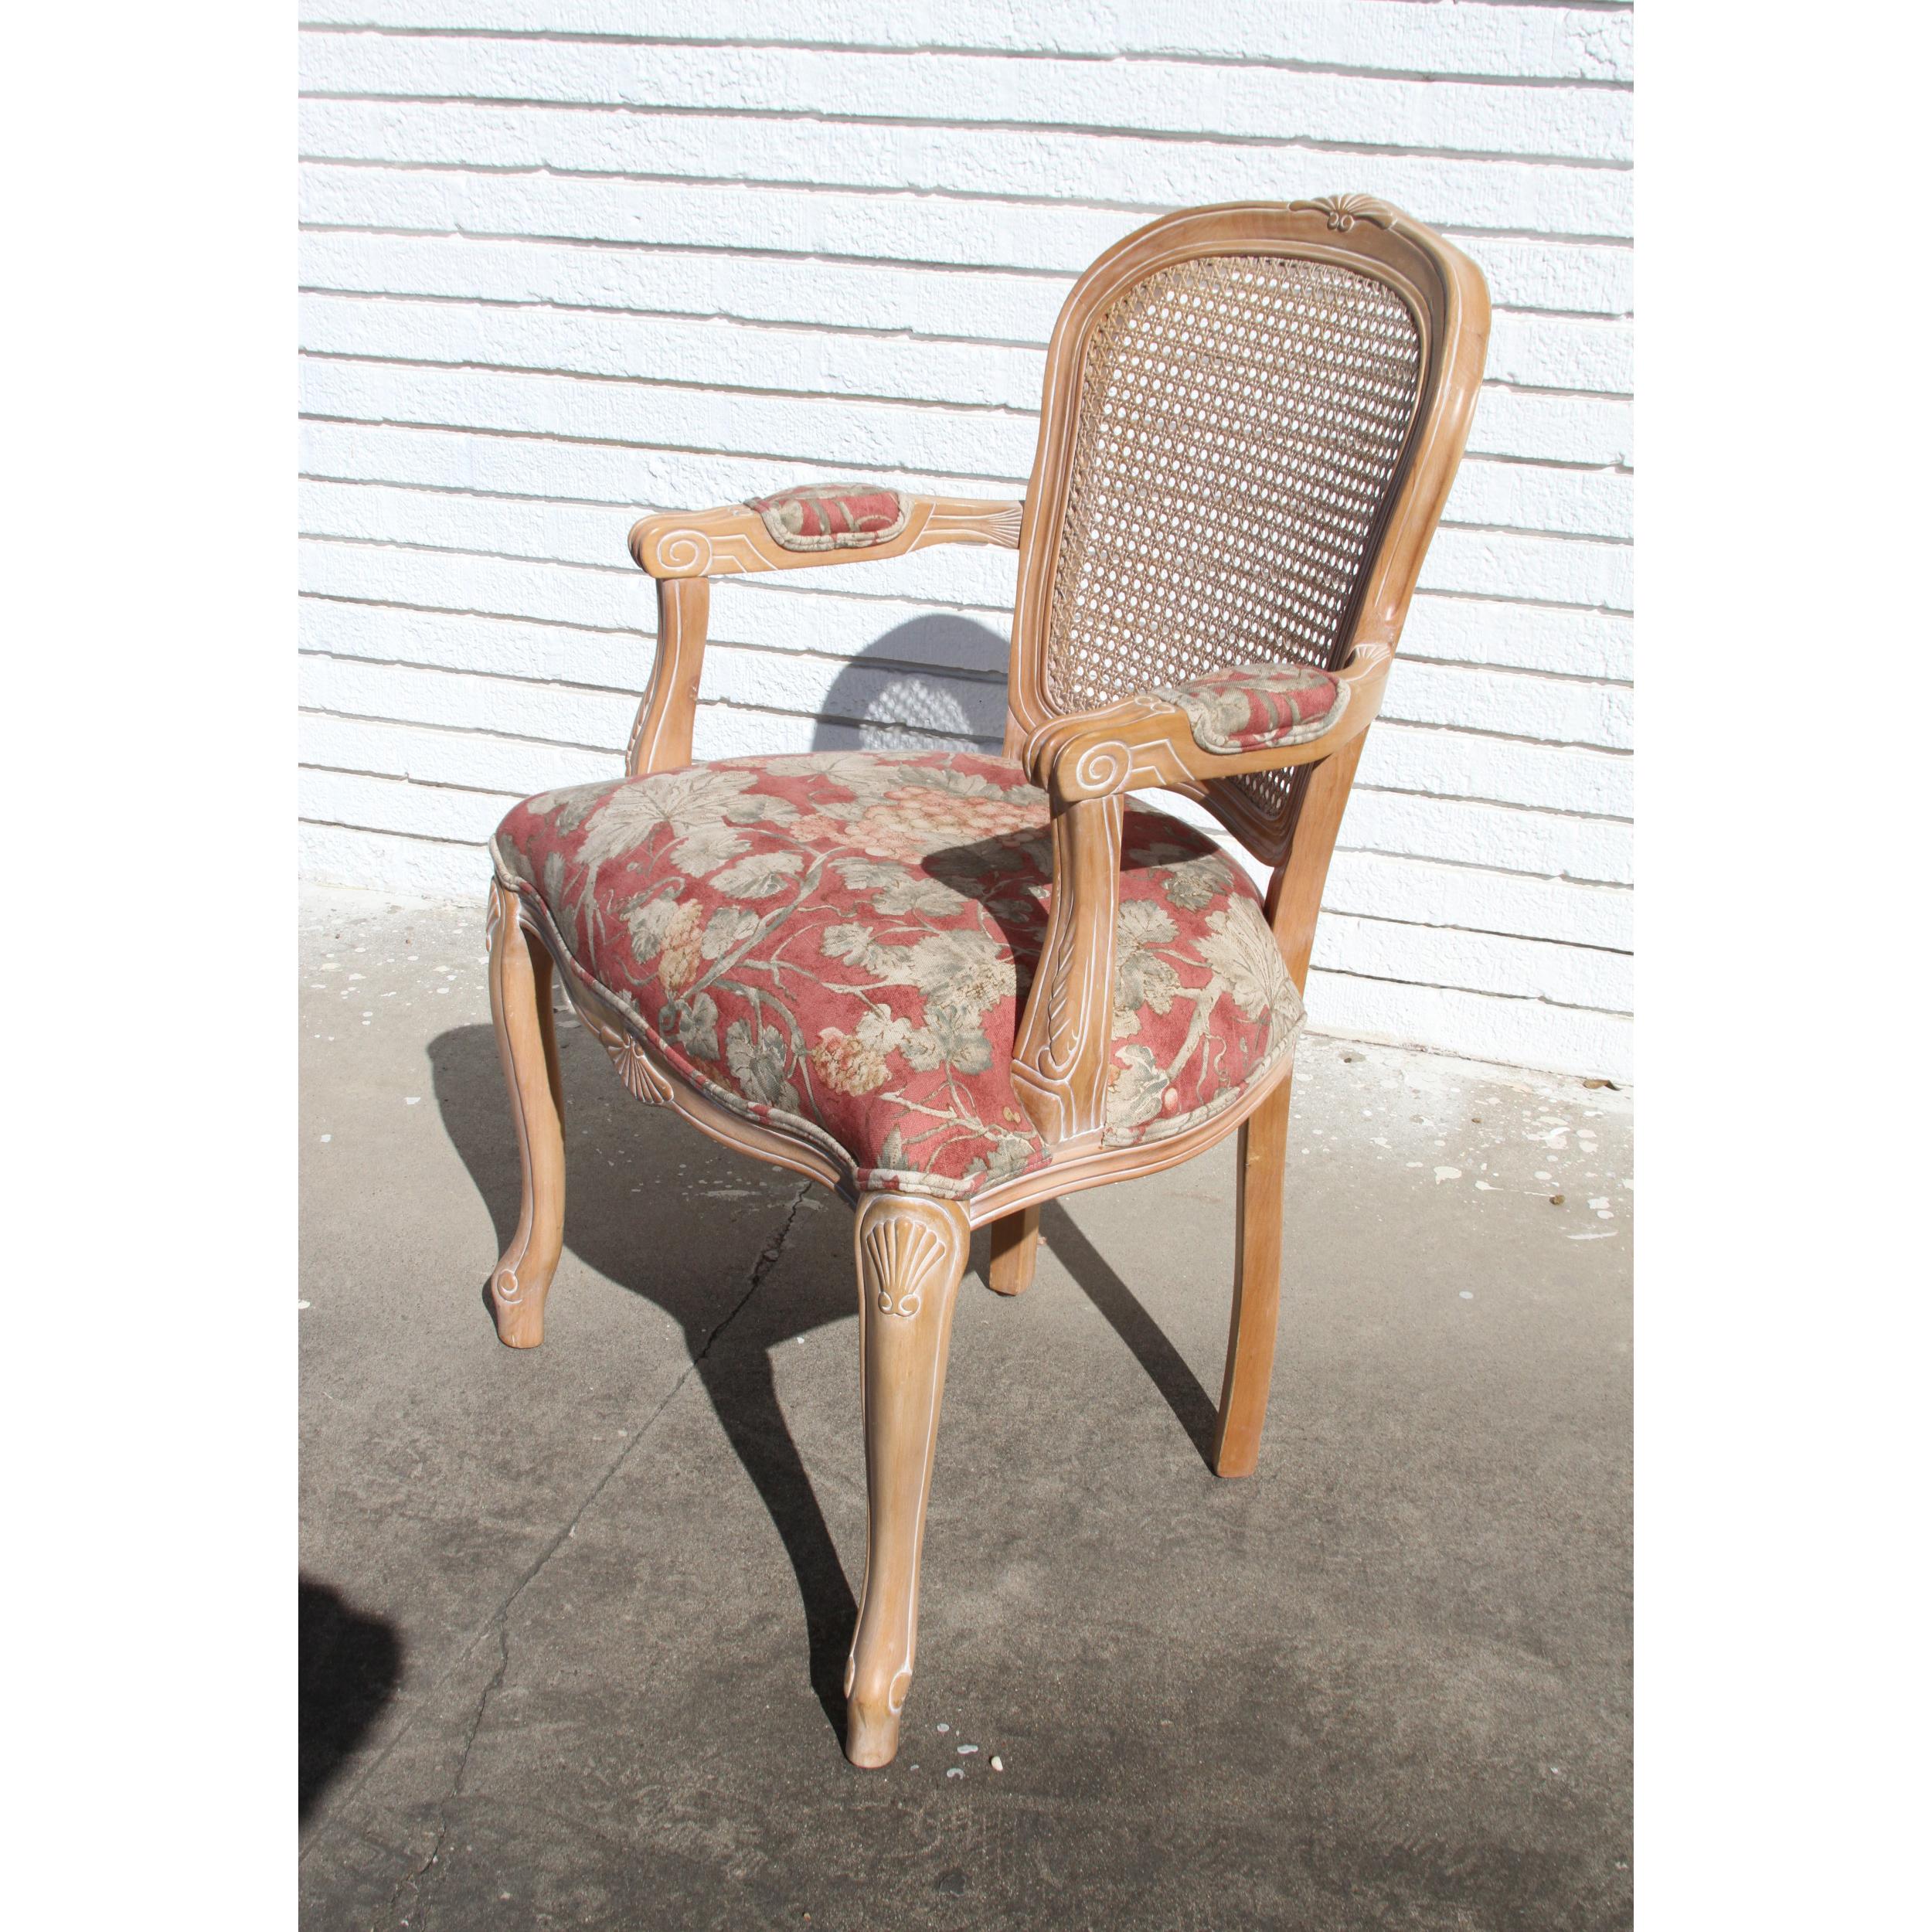 Magnifique chaise d'appoint de style français à dossier en forme de canne, tissu imprimé floral dans des tons feutrés, délicatement sculpté et accentué de bois clair.